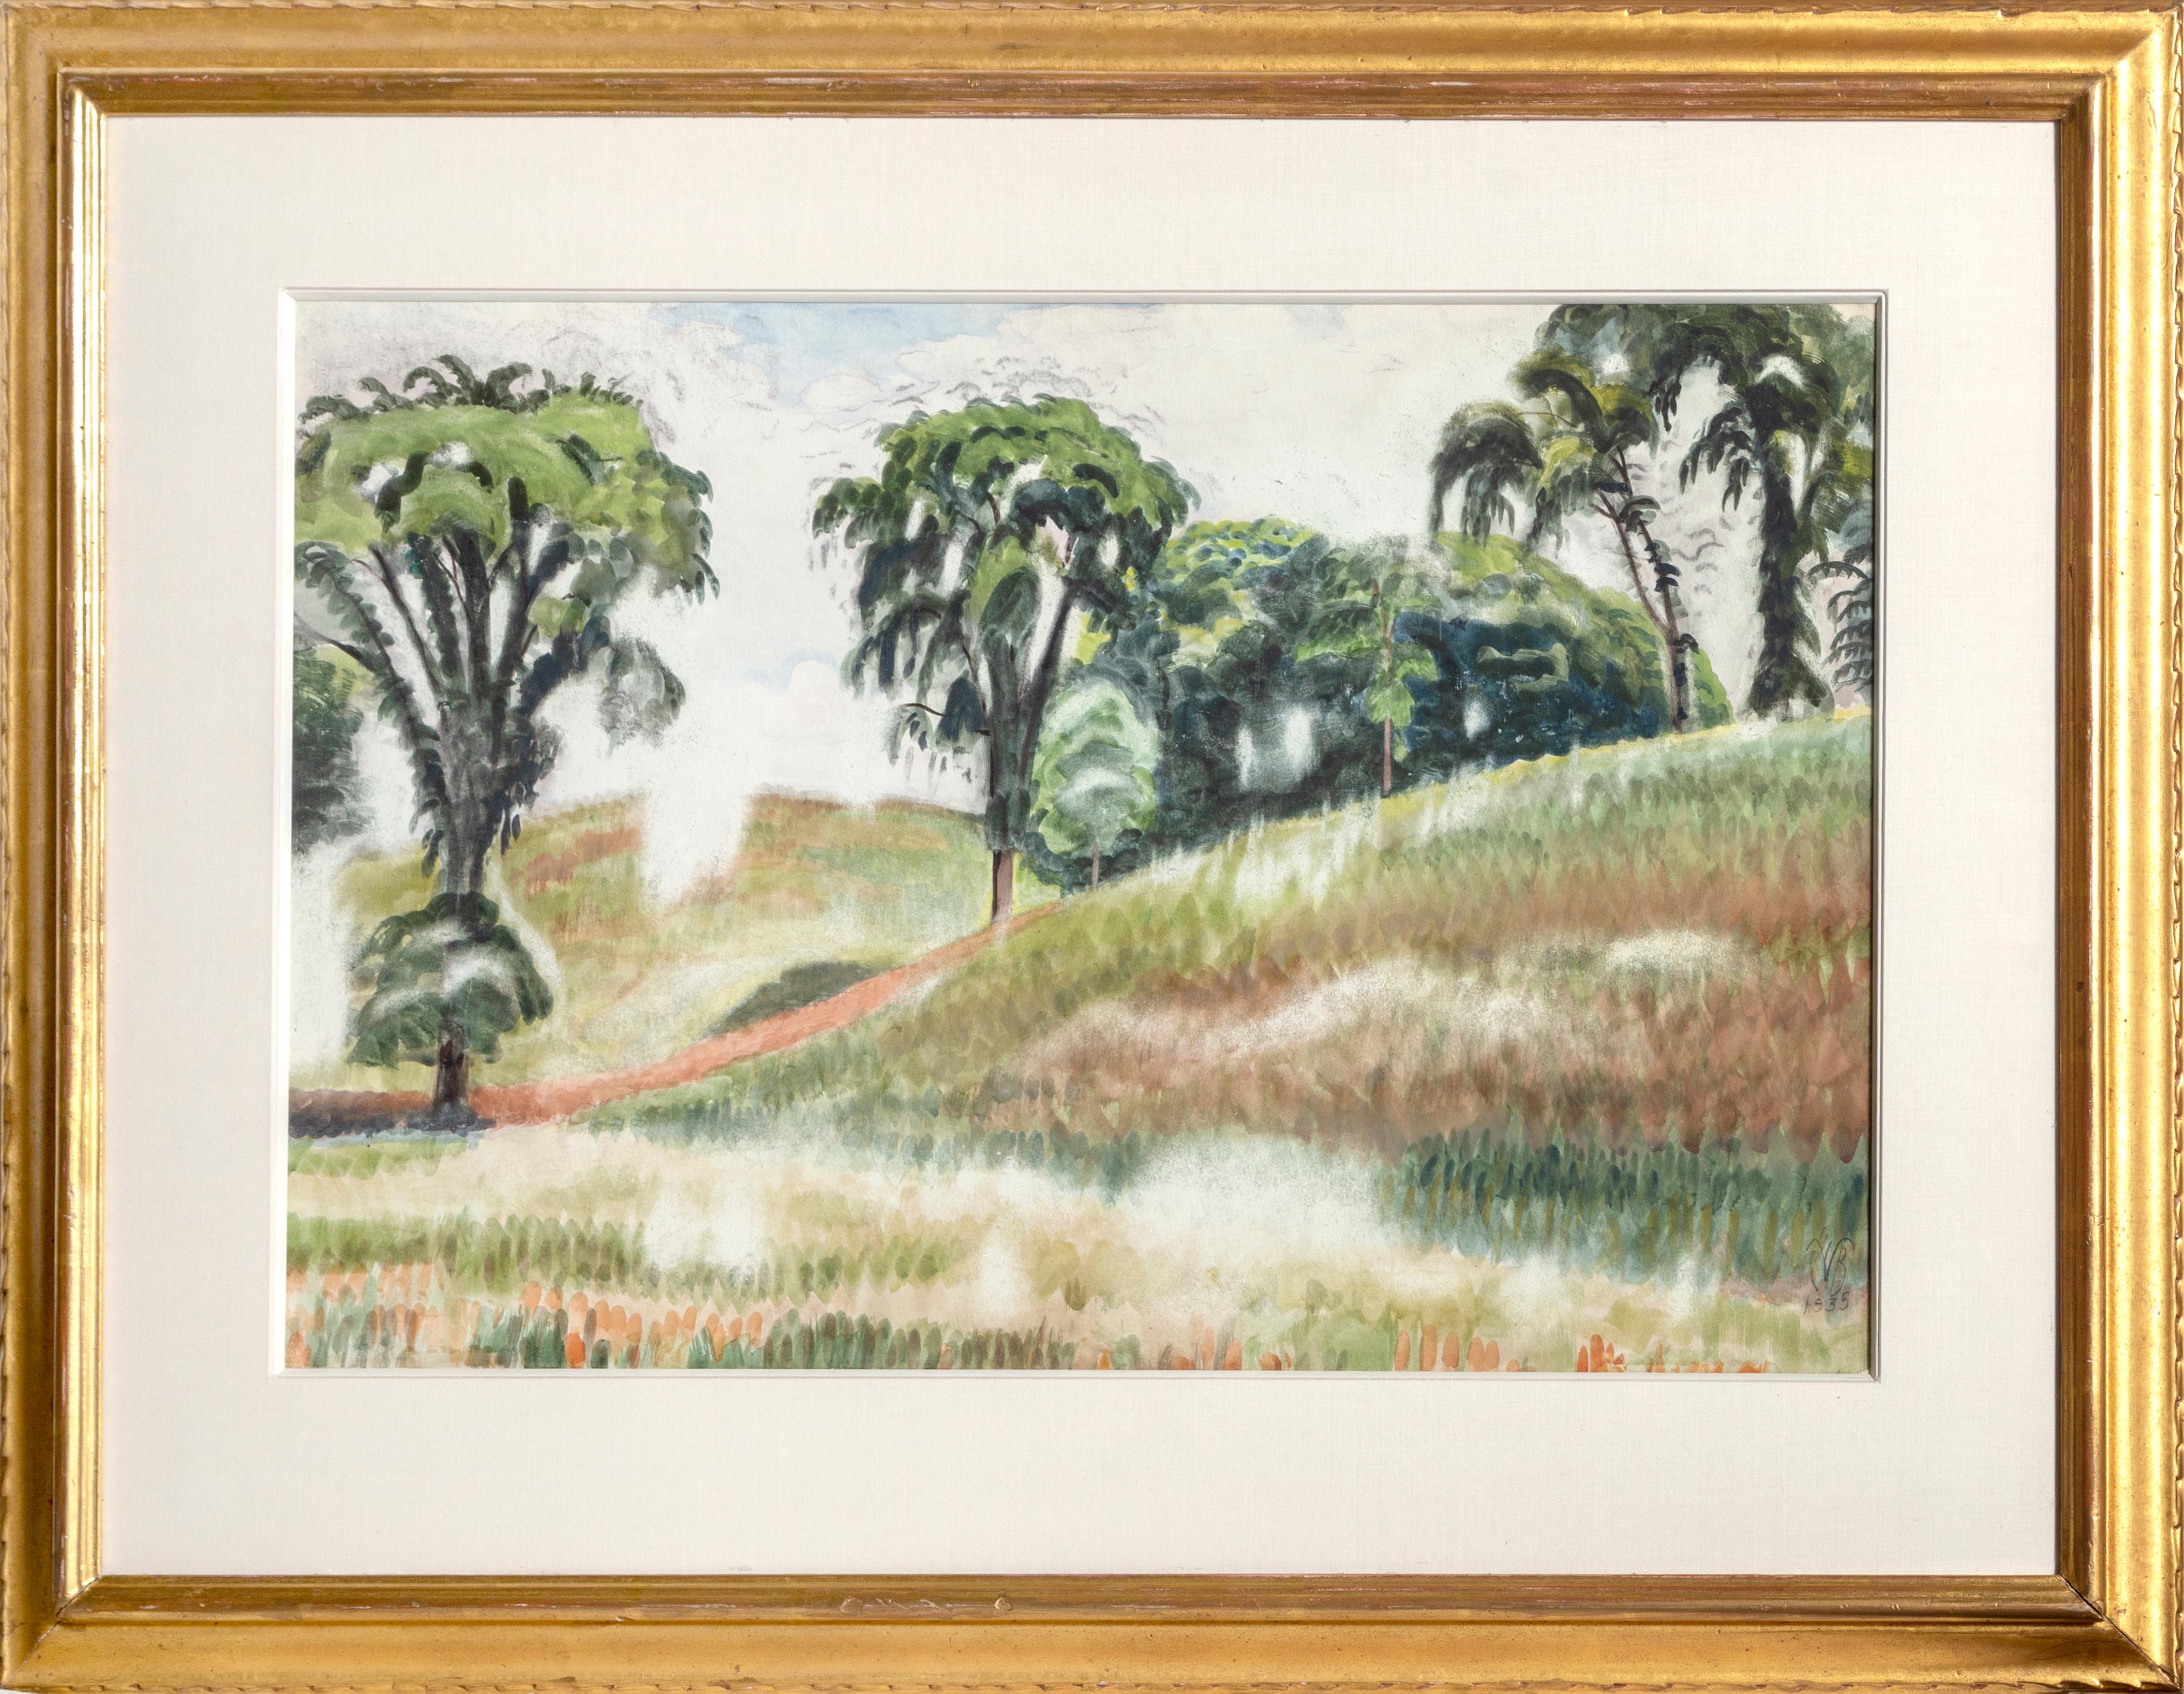 Scene on Windspear Road, Watercolor by Charles Burchfield 1935